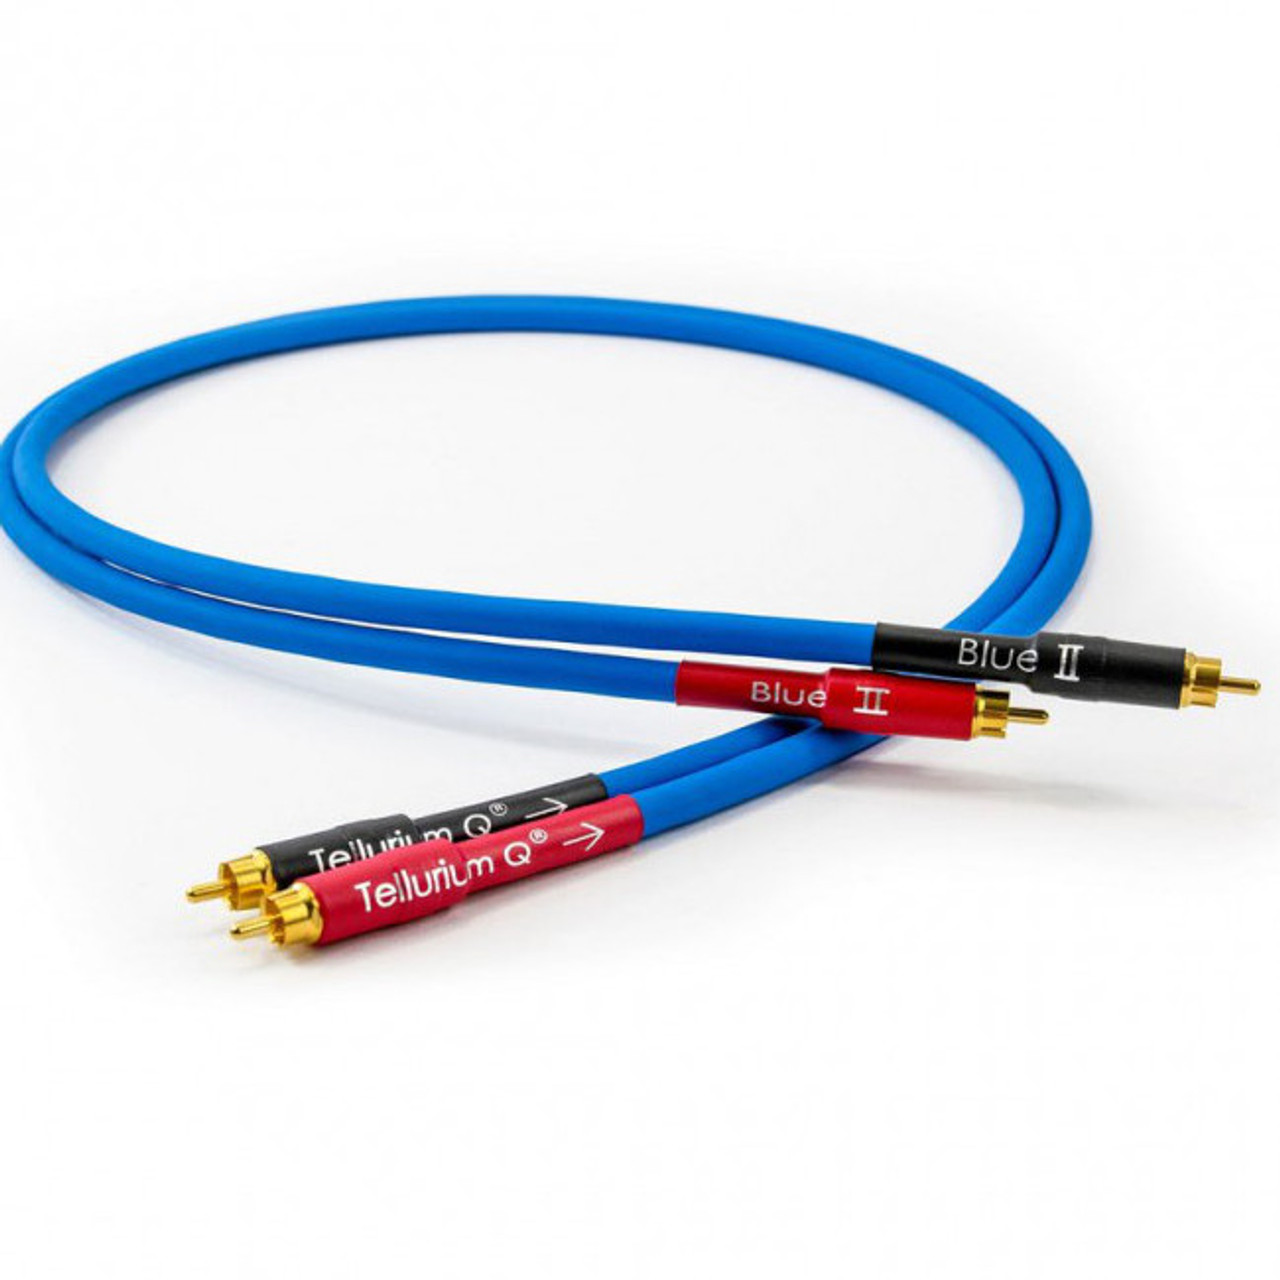 Tellurium Q Blue II RCA cables